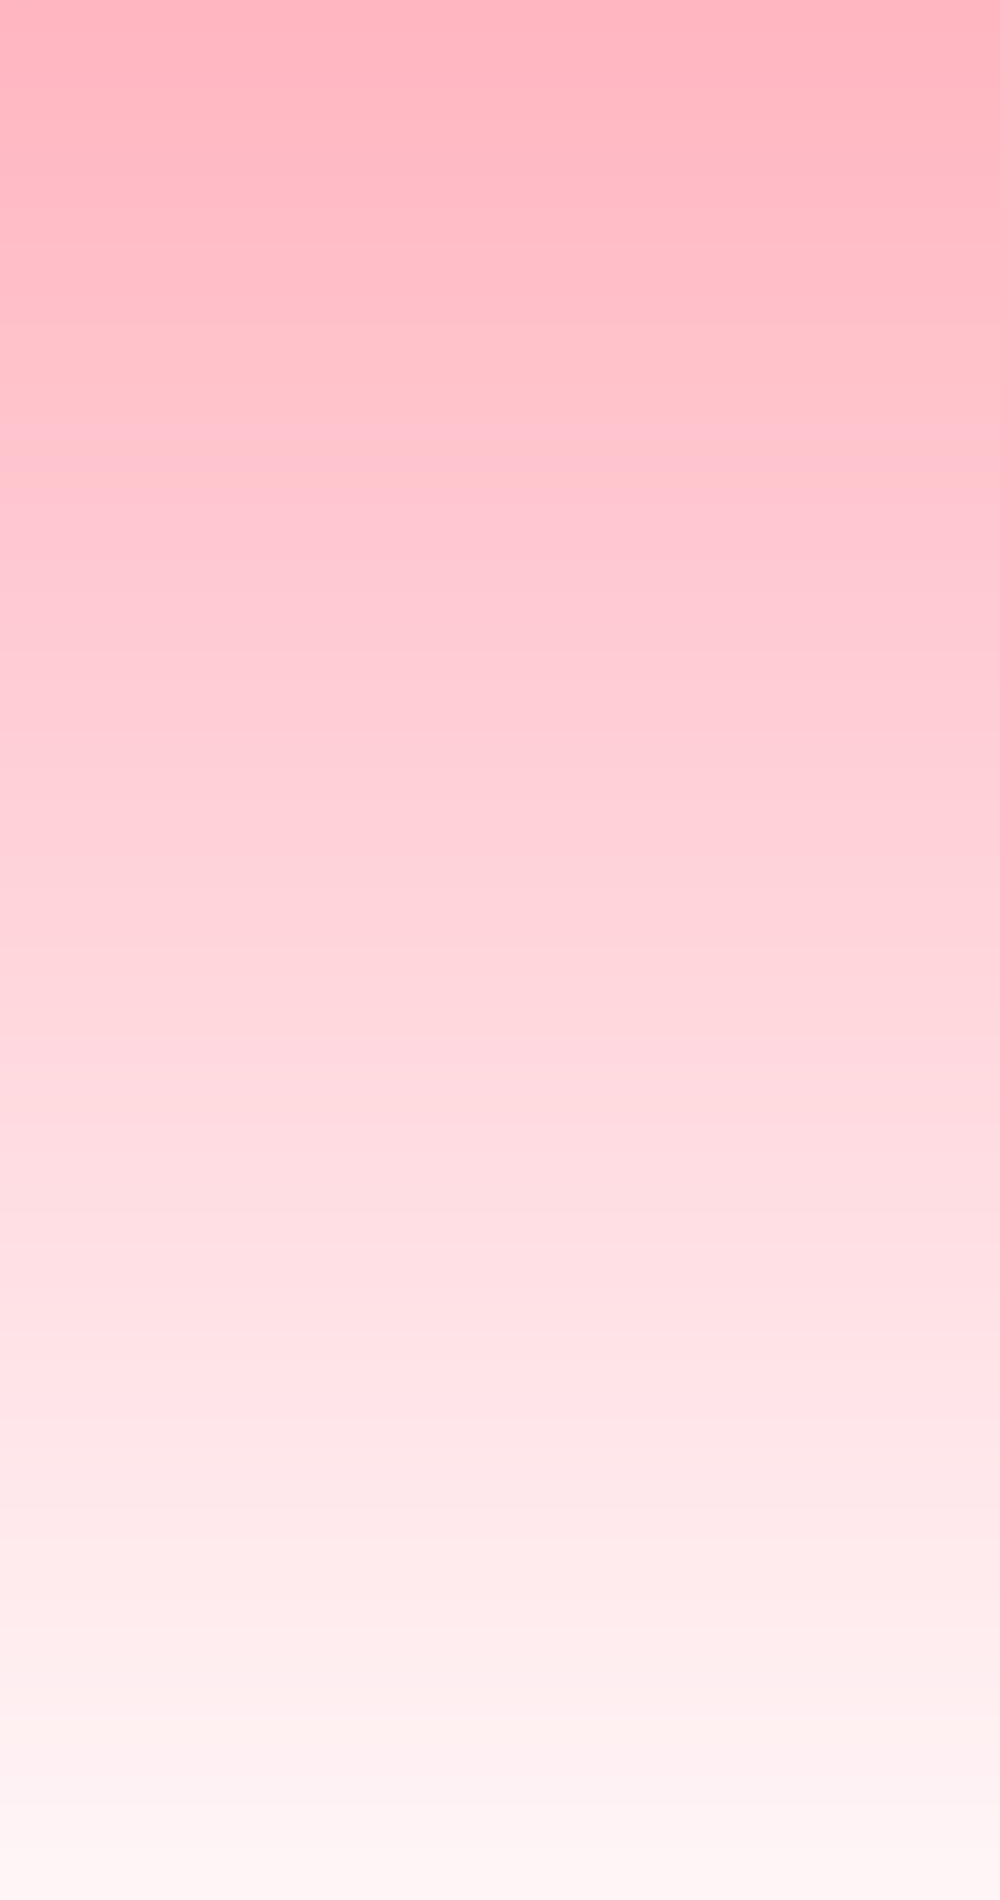 Light Pink Gradient Background By Virus Xenon On Deviantart